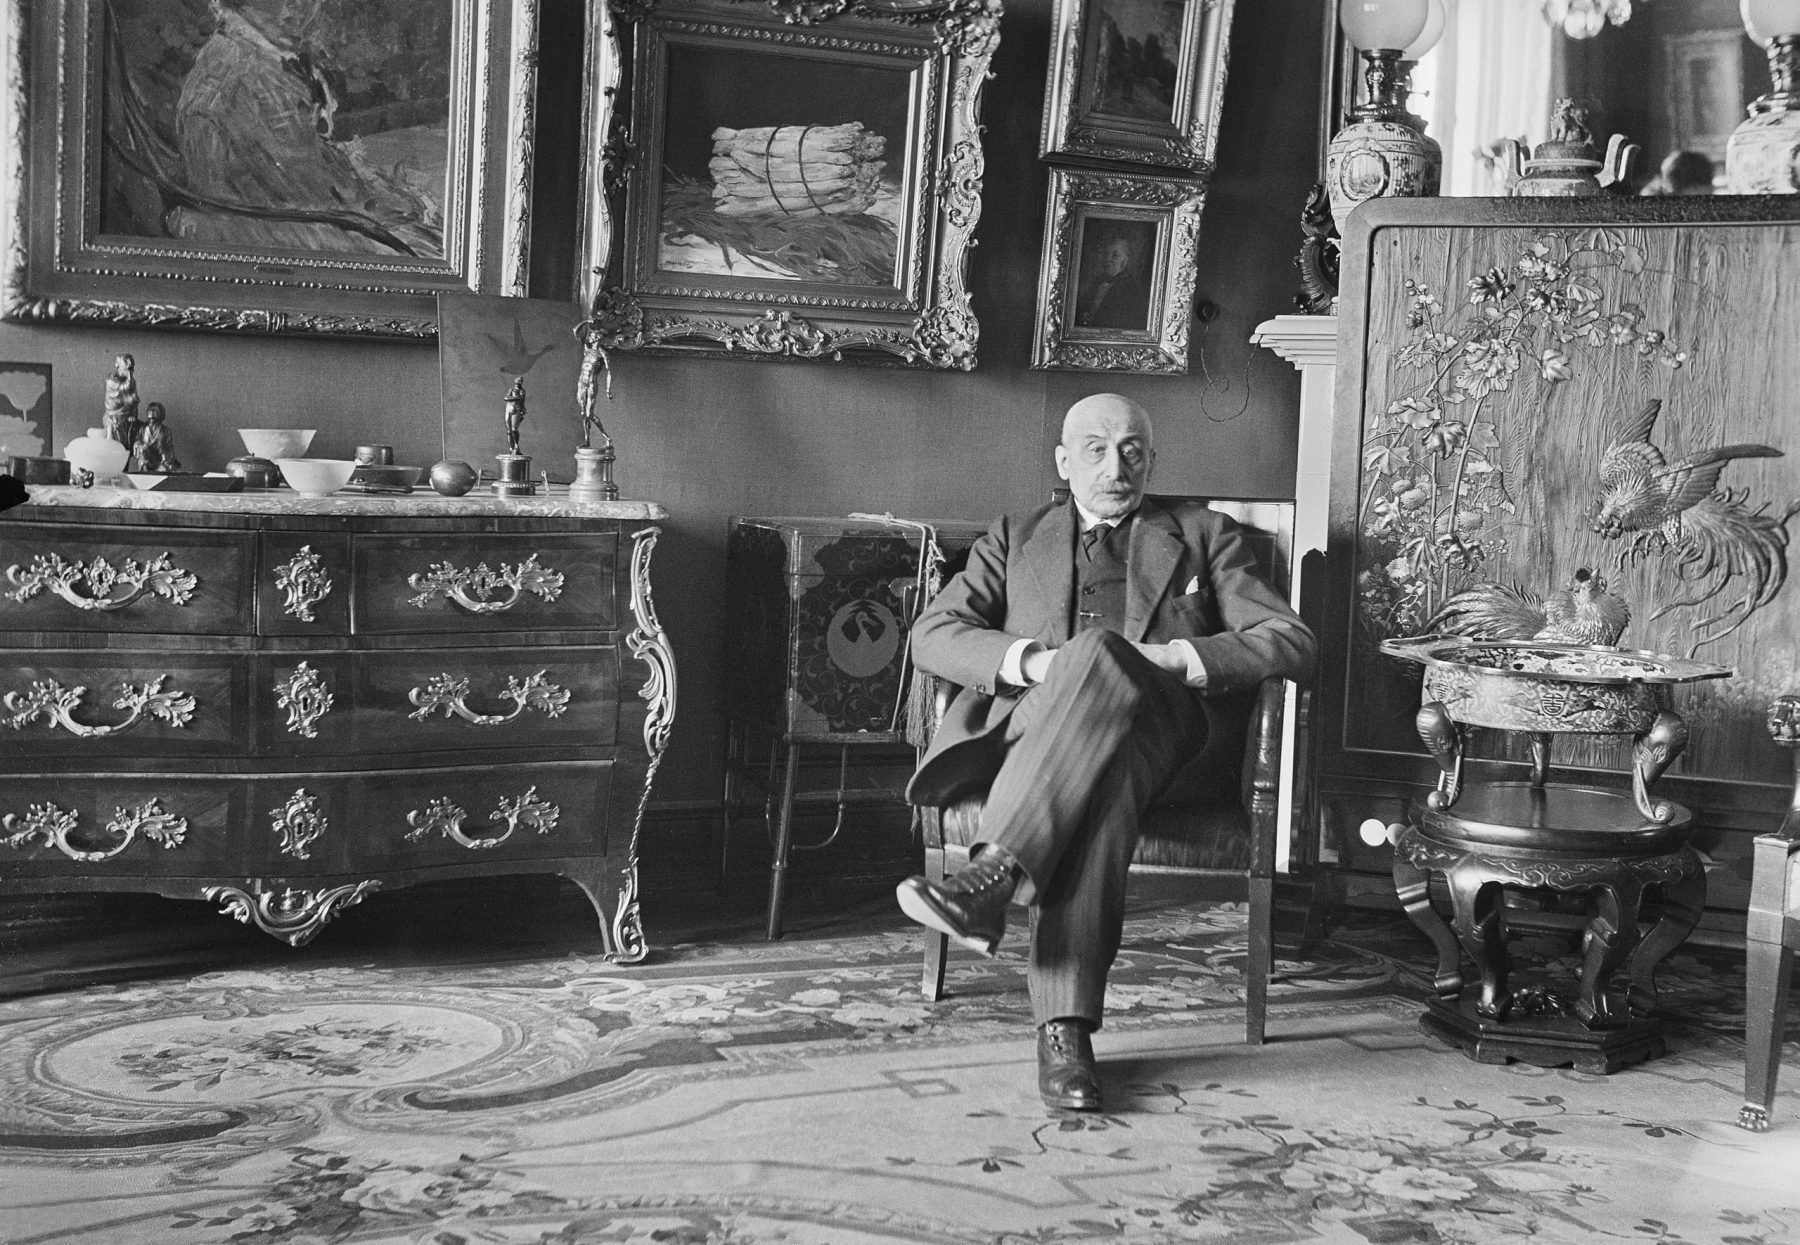 Fotografie von Max Liebermann in seiner Wohnung am Pariser Platz. Er sitzt auf einem Sesse, im Hintegrund sind kostbare Möbelstücke und Kunstwerke.